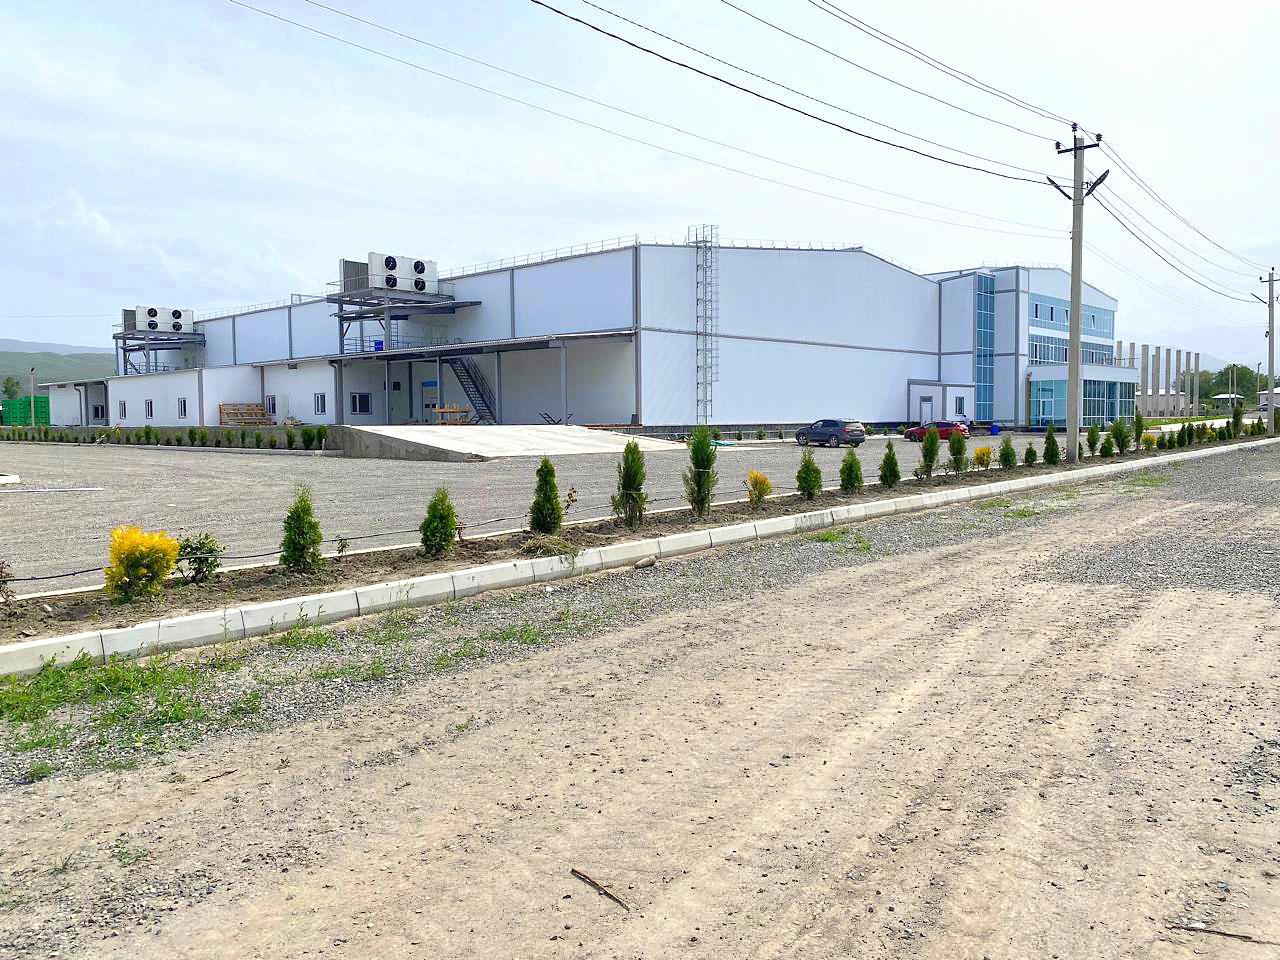 Фруктохранилище с РГС на 5000 тонн плодовой продукции в Дагестане построено из сэндвич-панелей «ПрофХолода» с PIR Premier и минеральной ватой